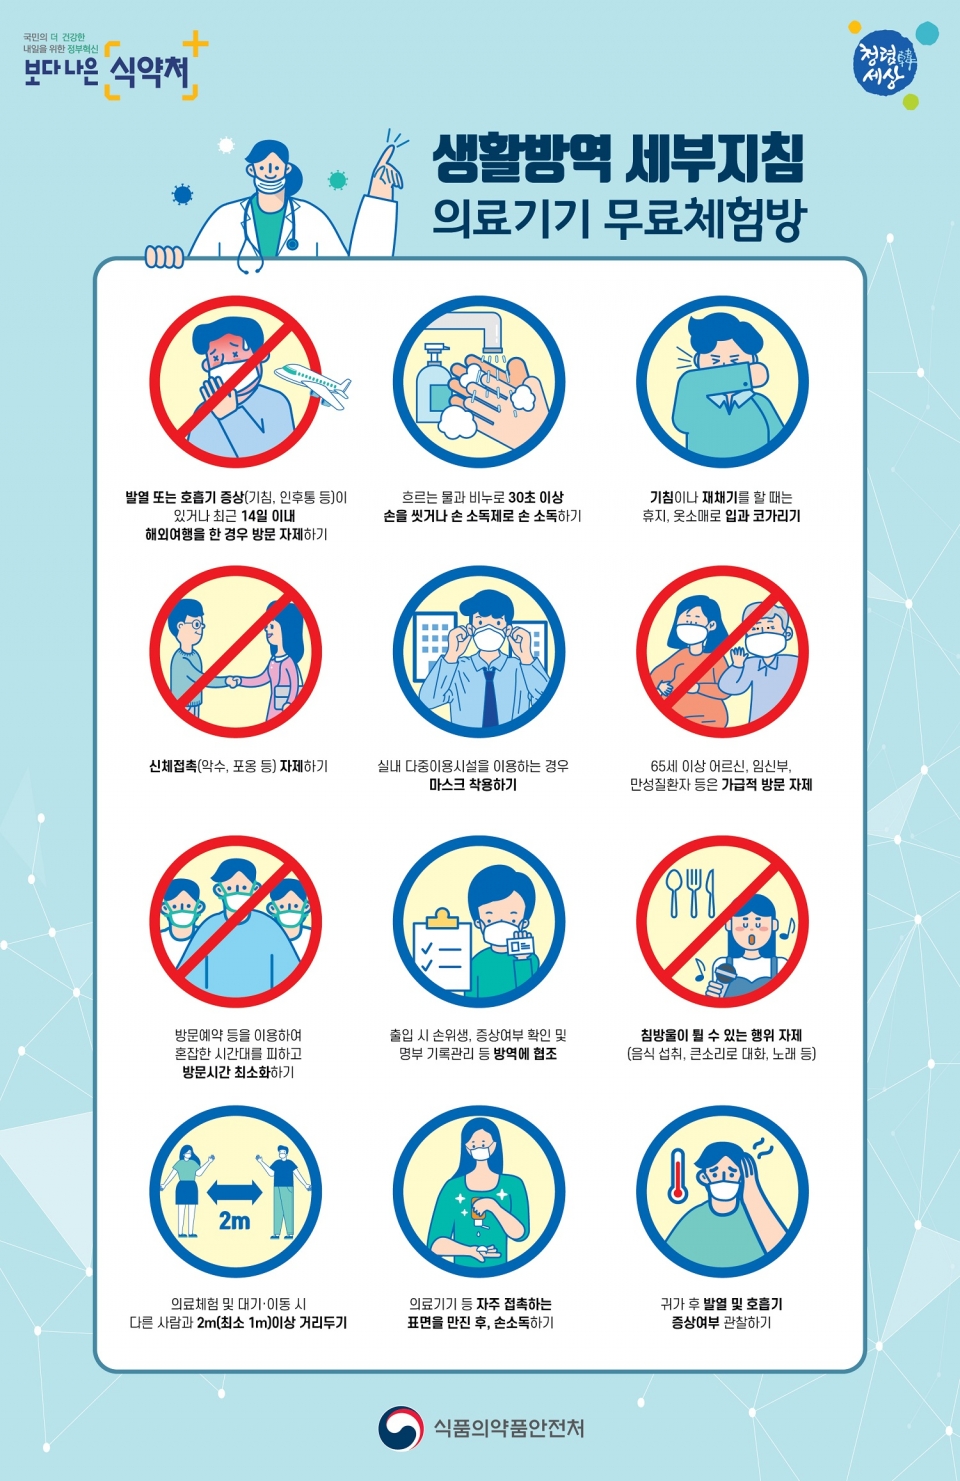 의료기기 무료체험방 생활방역 세부지침 포스터